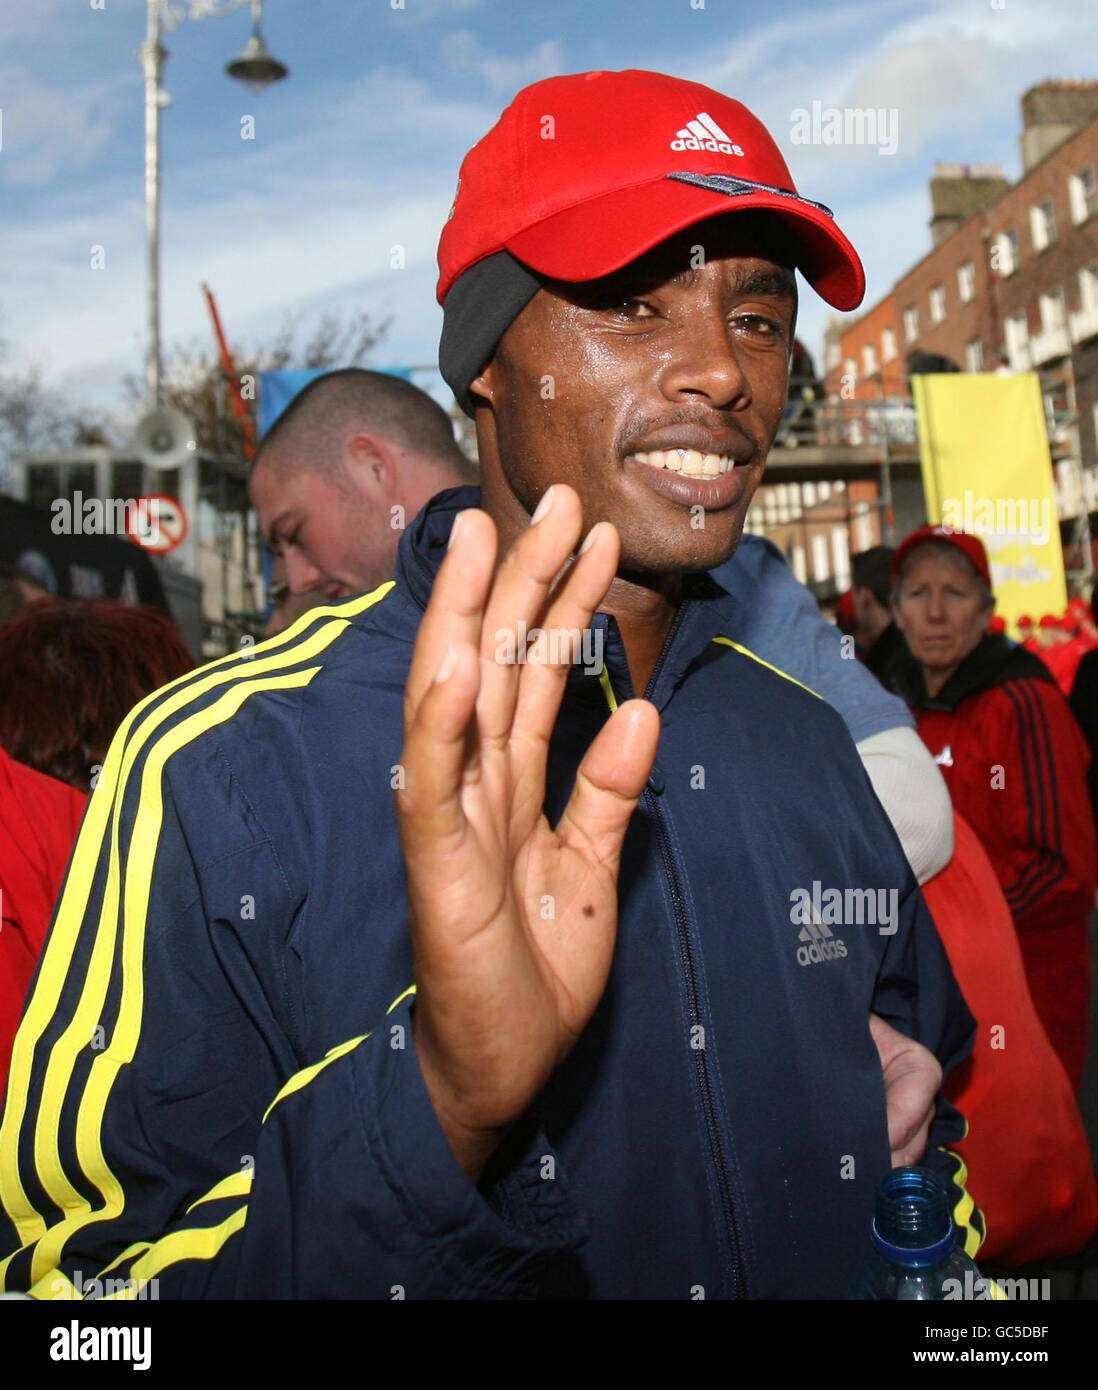 Der Äthiopier Feyisa Lilesa feiert seinen Sieg nach dem Dublin City Marathon in Dublin, Irland. Stockfoto